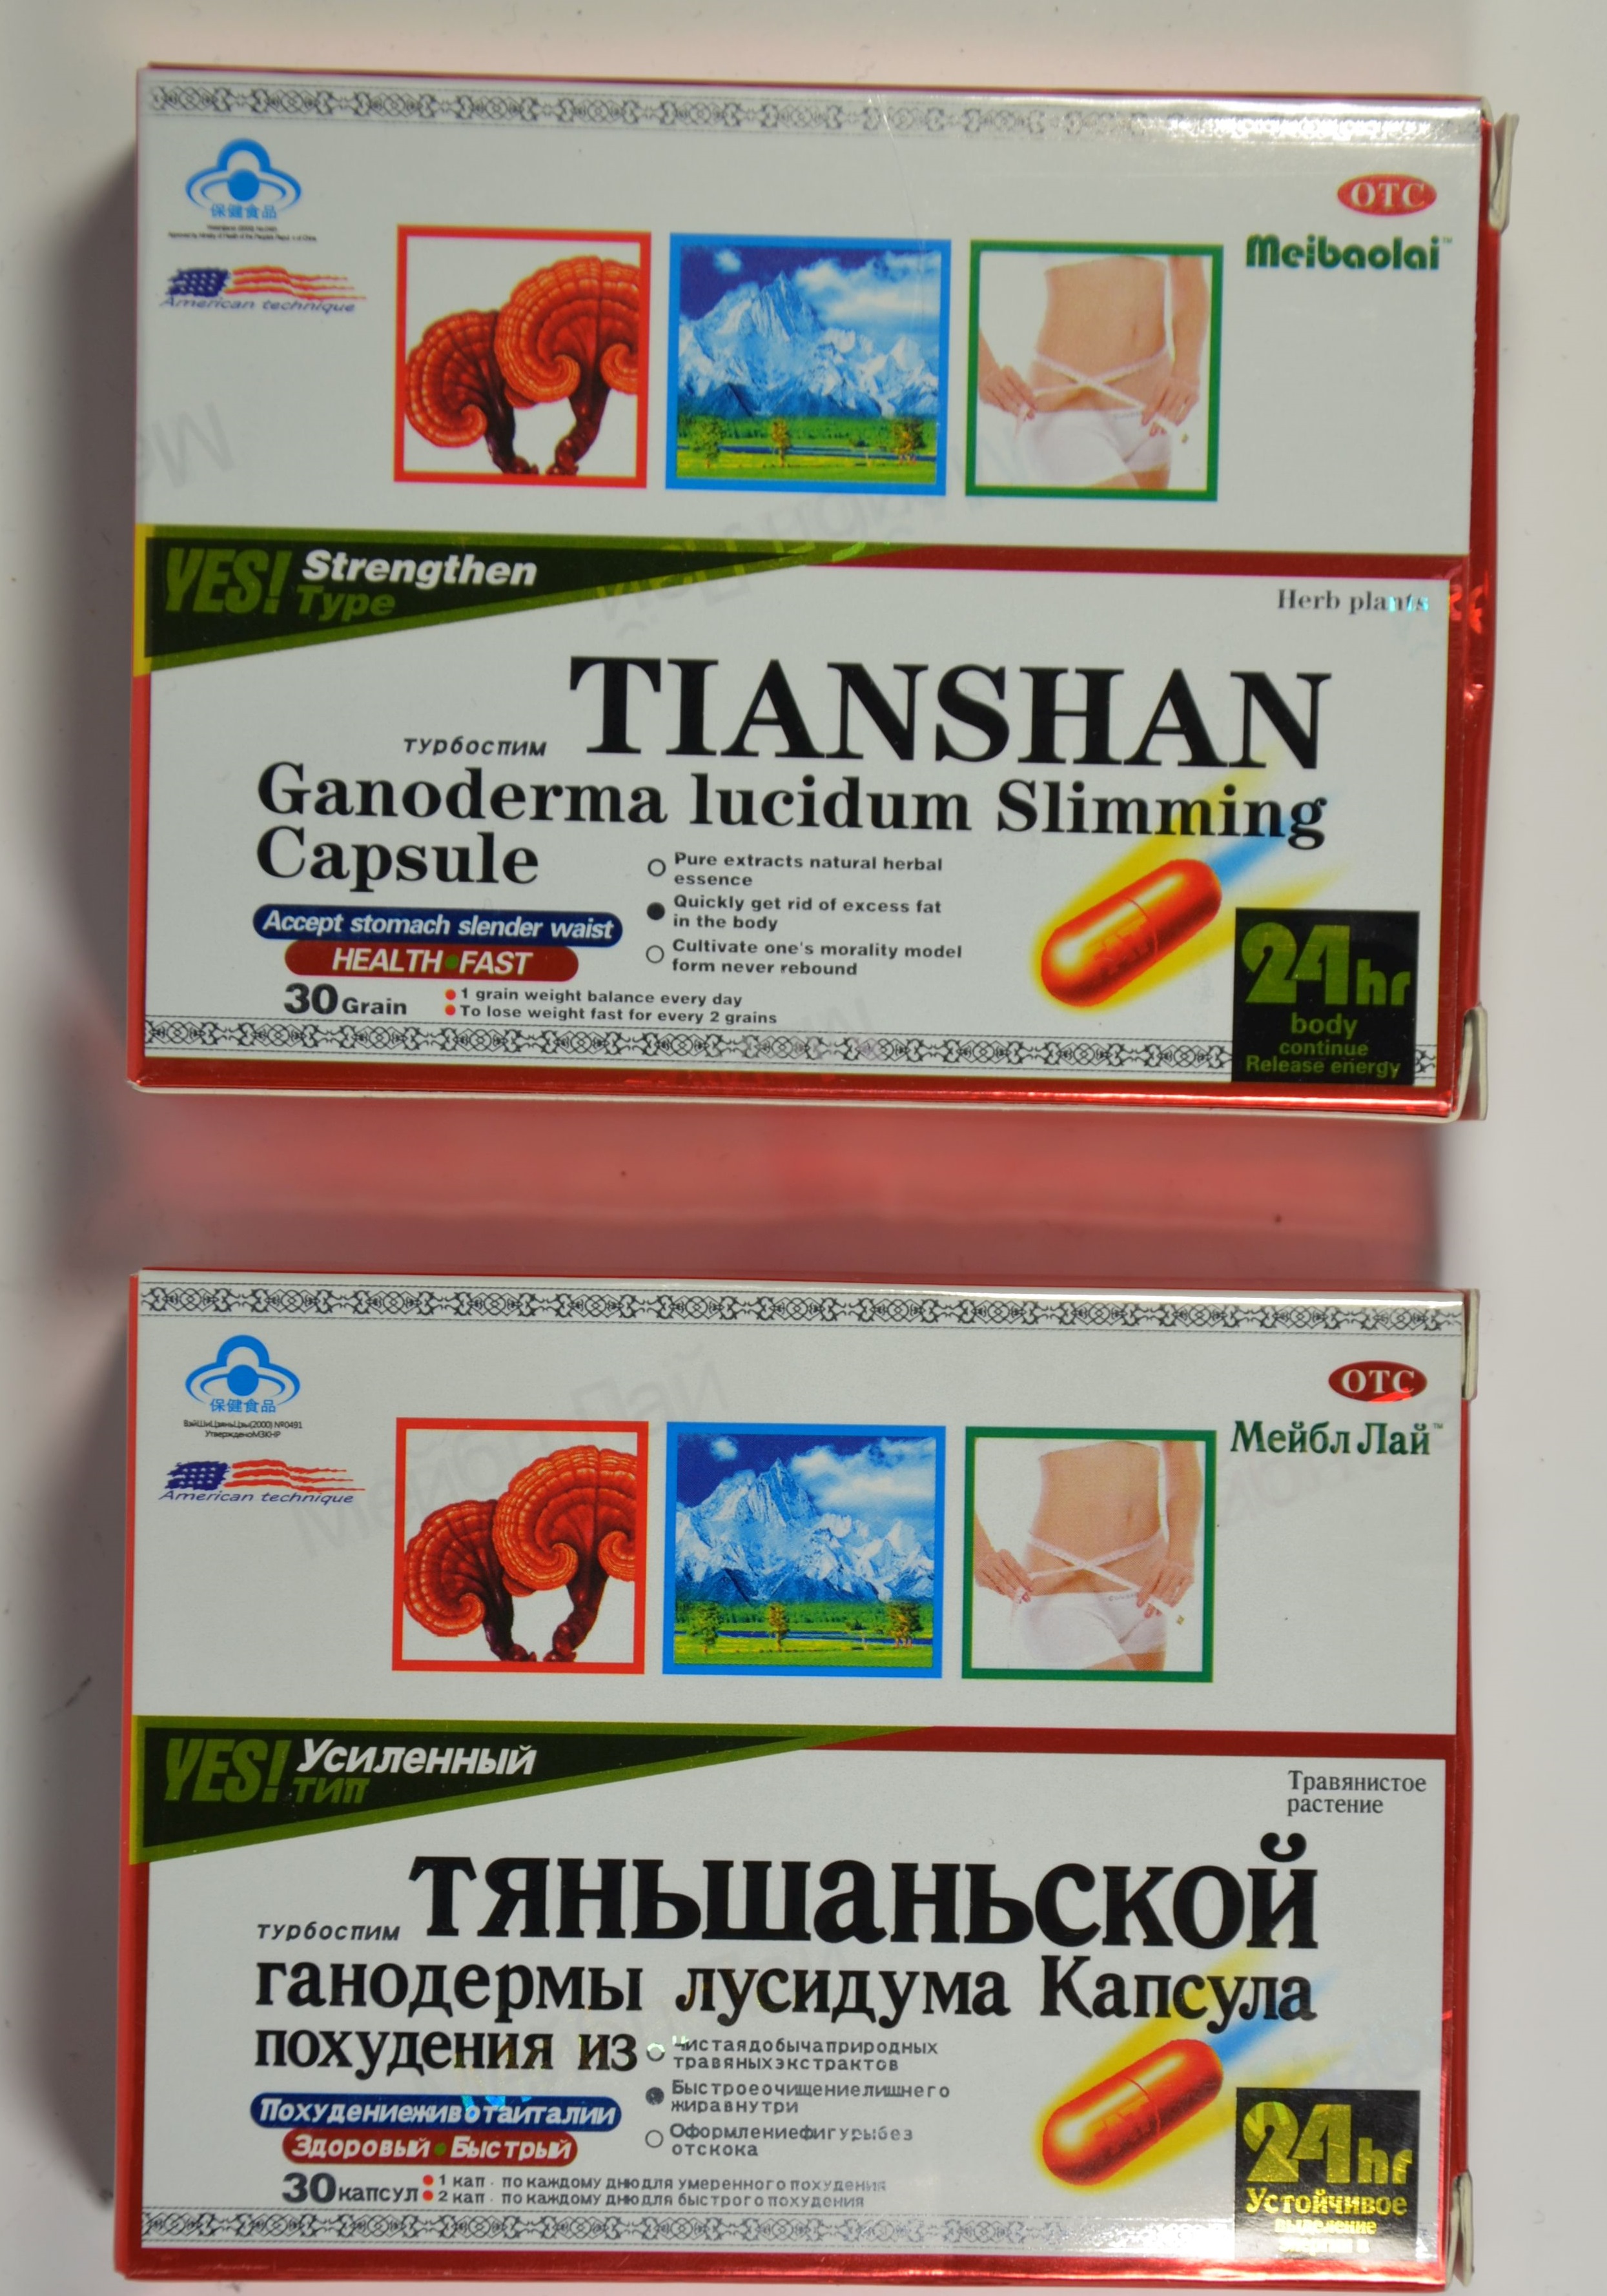 Billede af det ulovlige produkt: Tianshan Ganoderma Lucidum Slimming Capsule